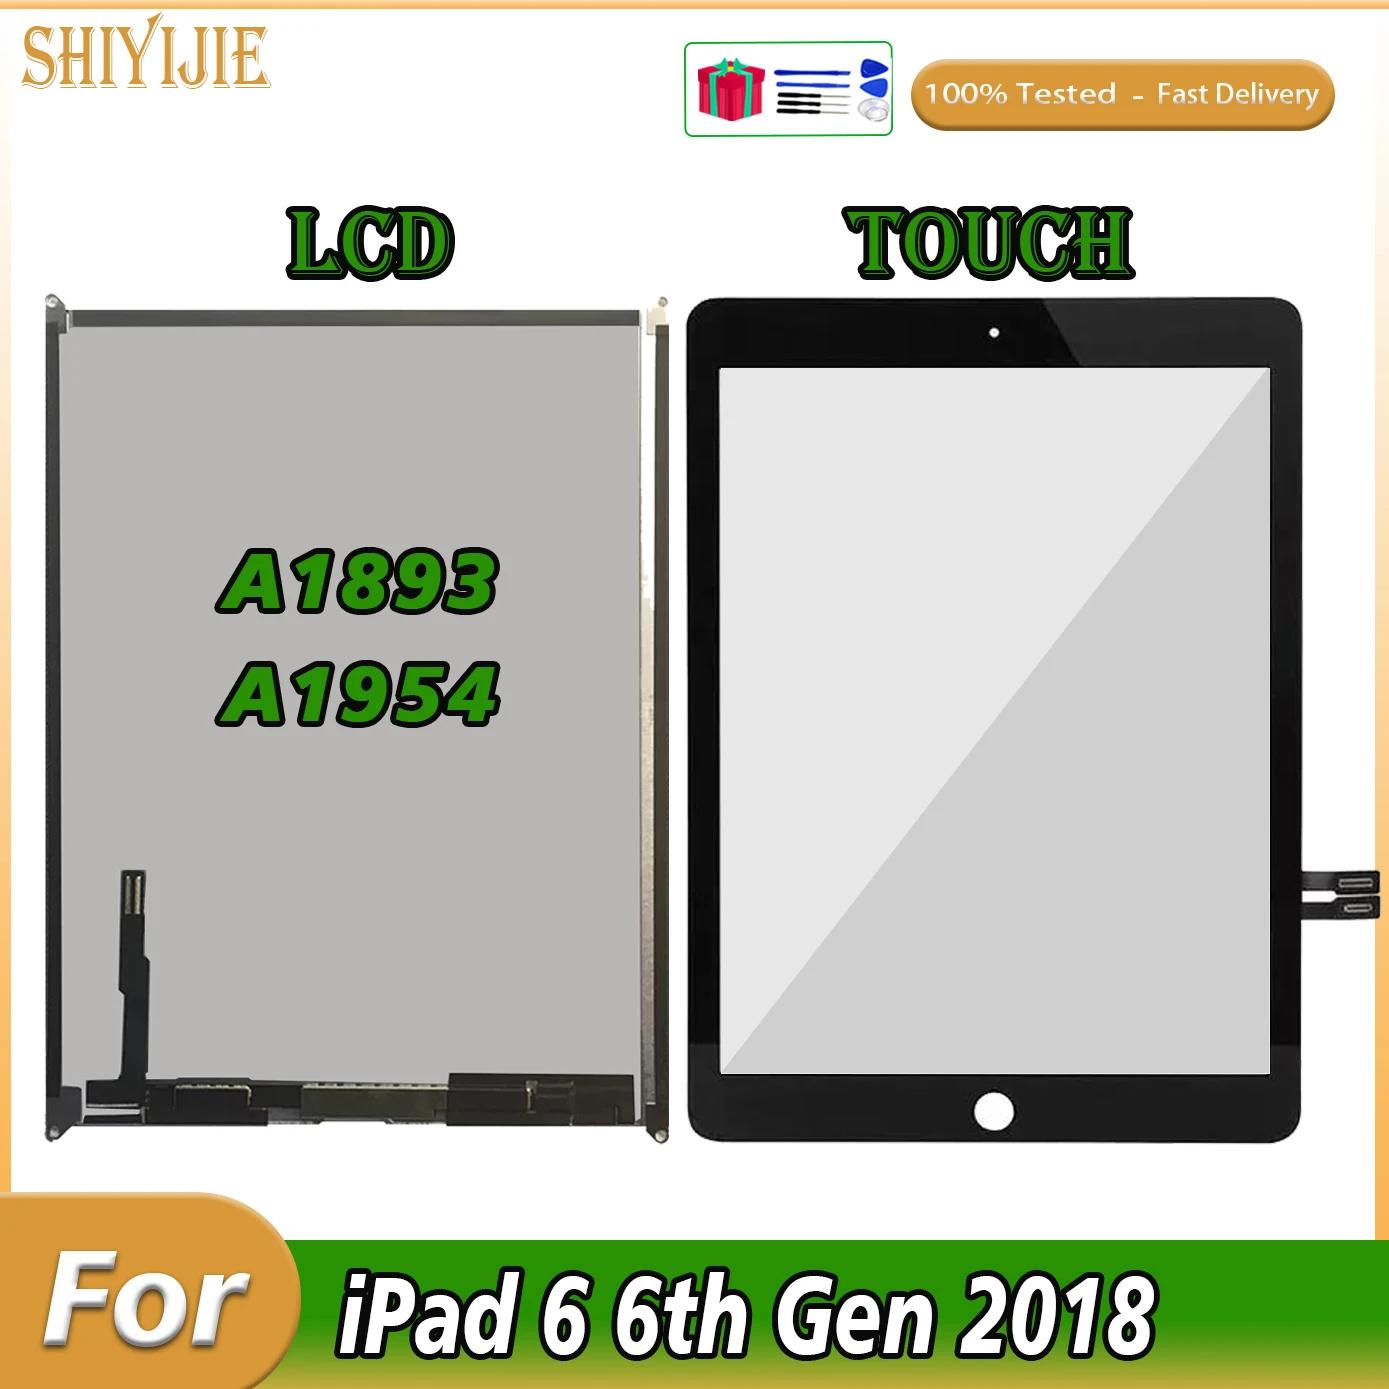 Ż е 2018 LCD ġ ũ Ÿ г, iPad 6  2018, A1893, A1954